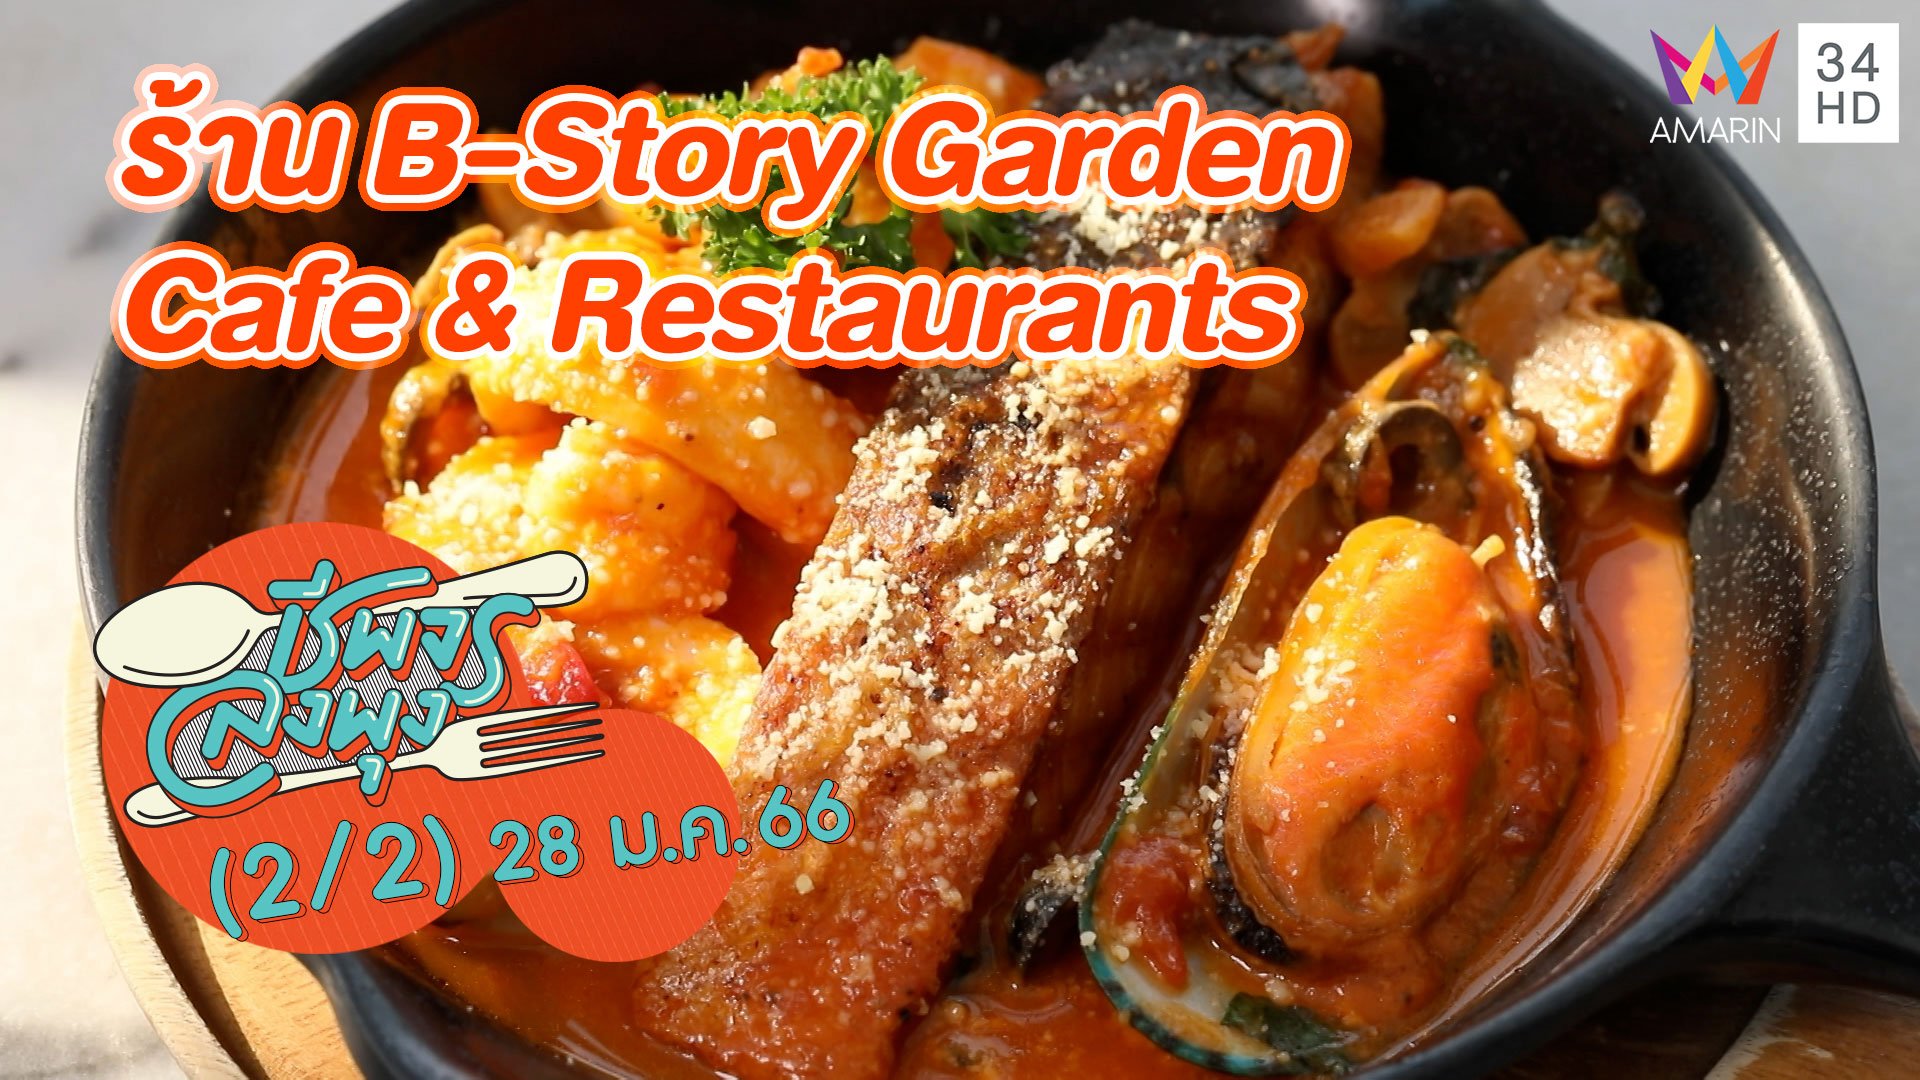 คาเฟ่สไตล์ยุโรป @ ร้าน B-Story Garden Cafe & Restaurants | ชีพจรลงพุง | 28 ม.ค. 66 (2/2) | AMARIN TVHD34